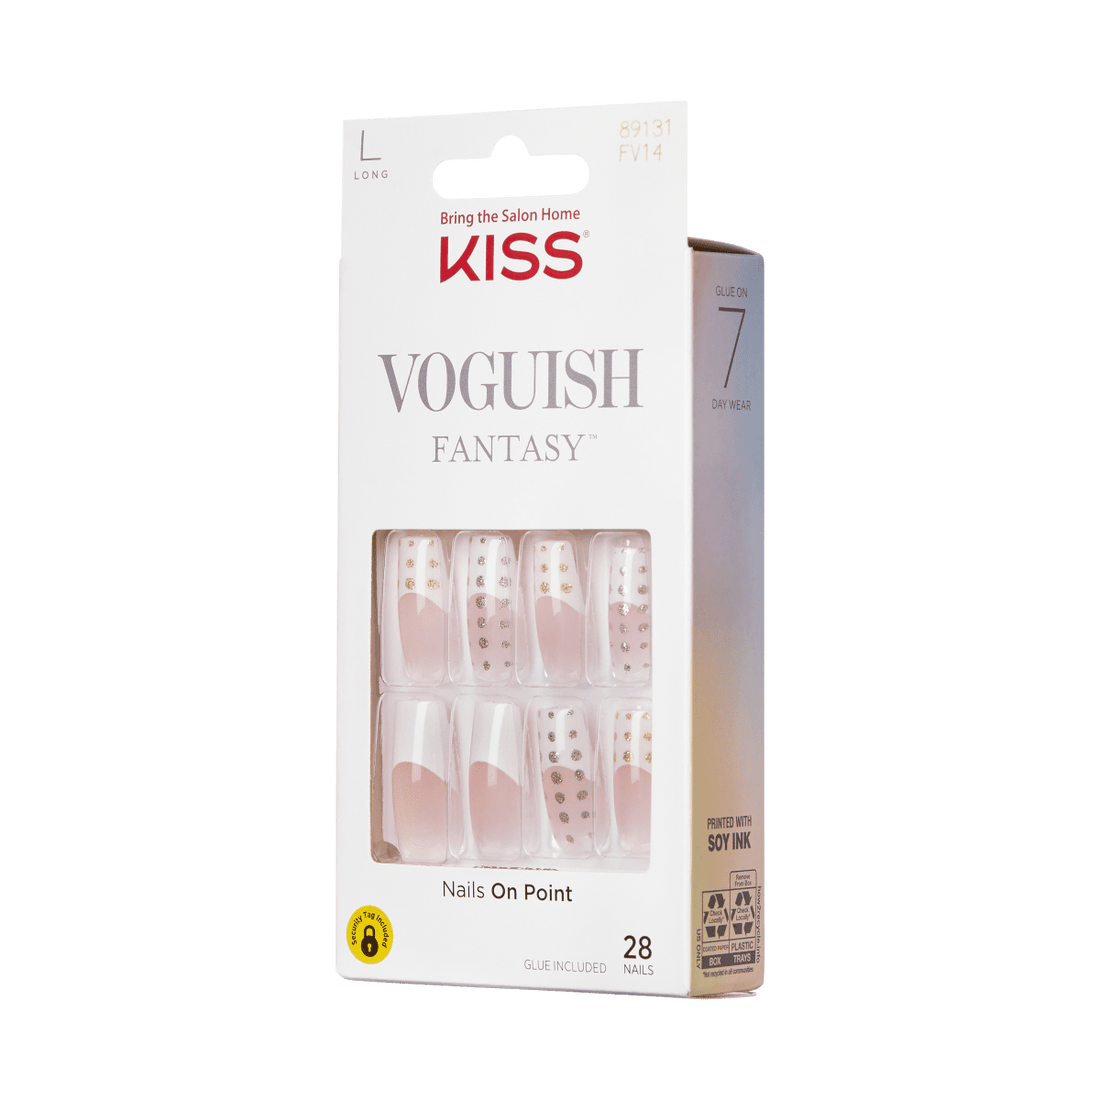 KISS Voguish Fantasy Nails- Intimidated